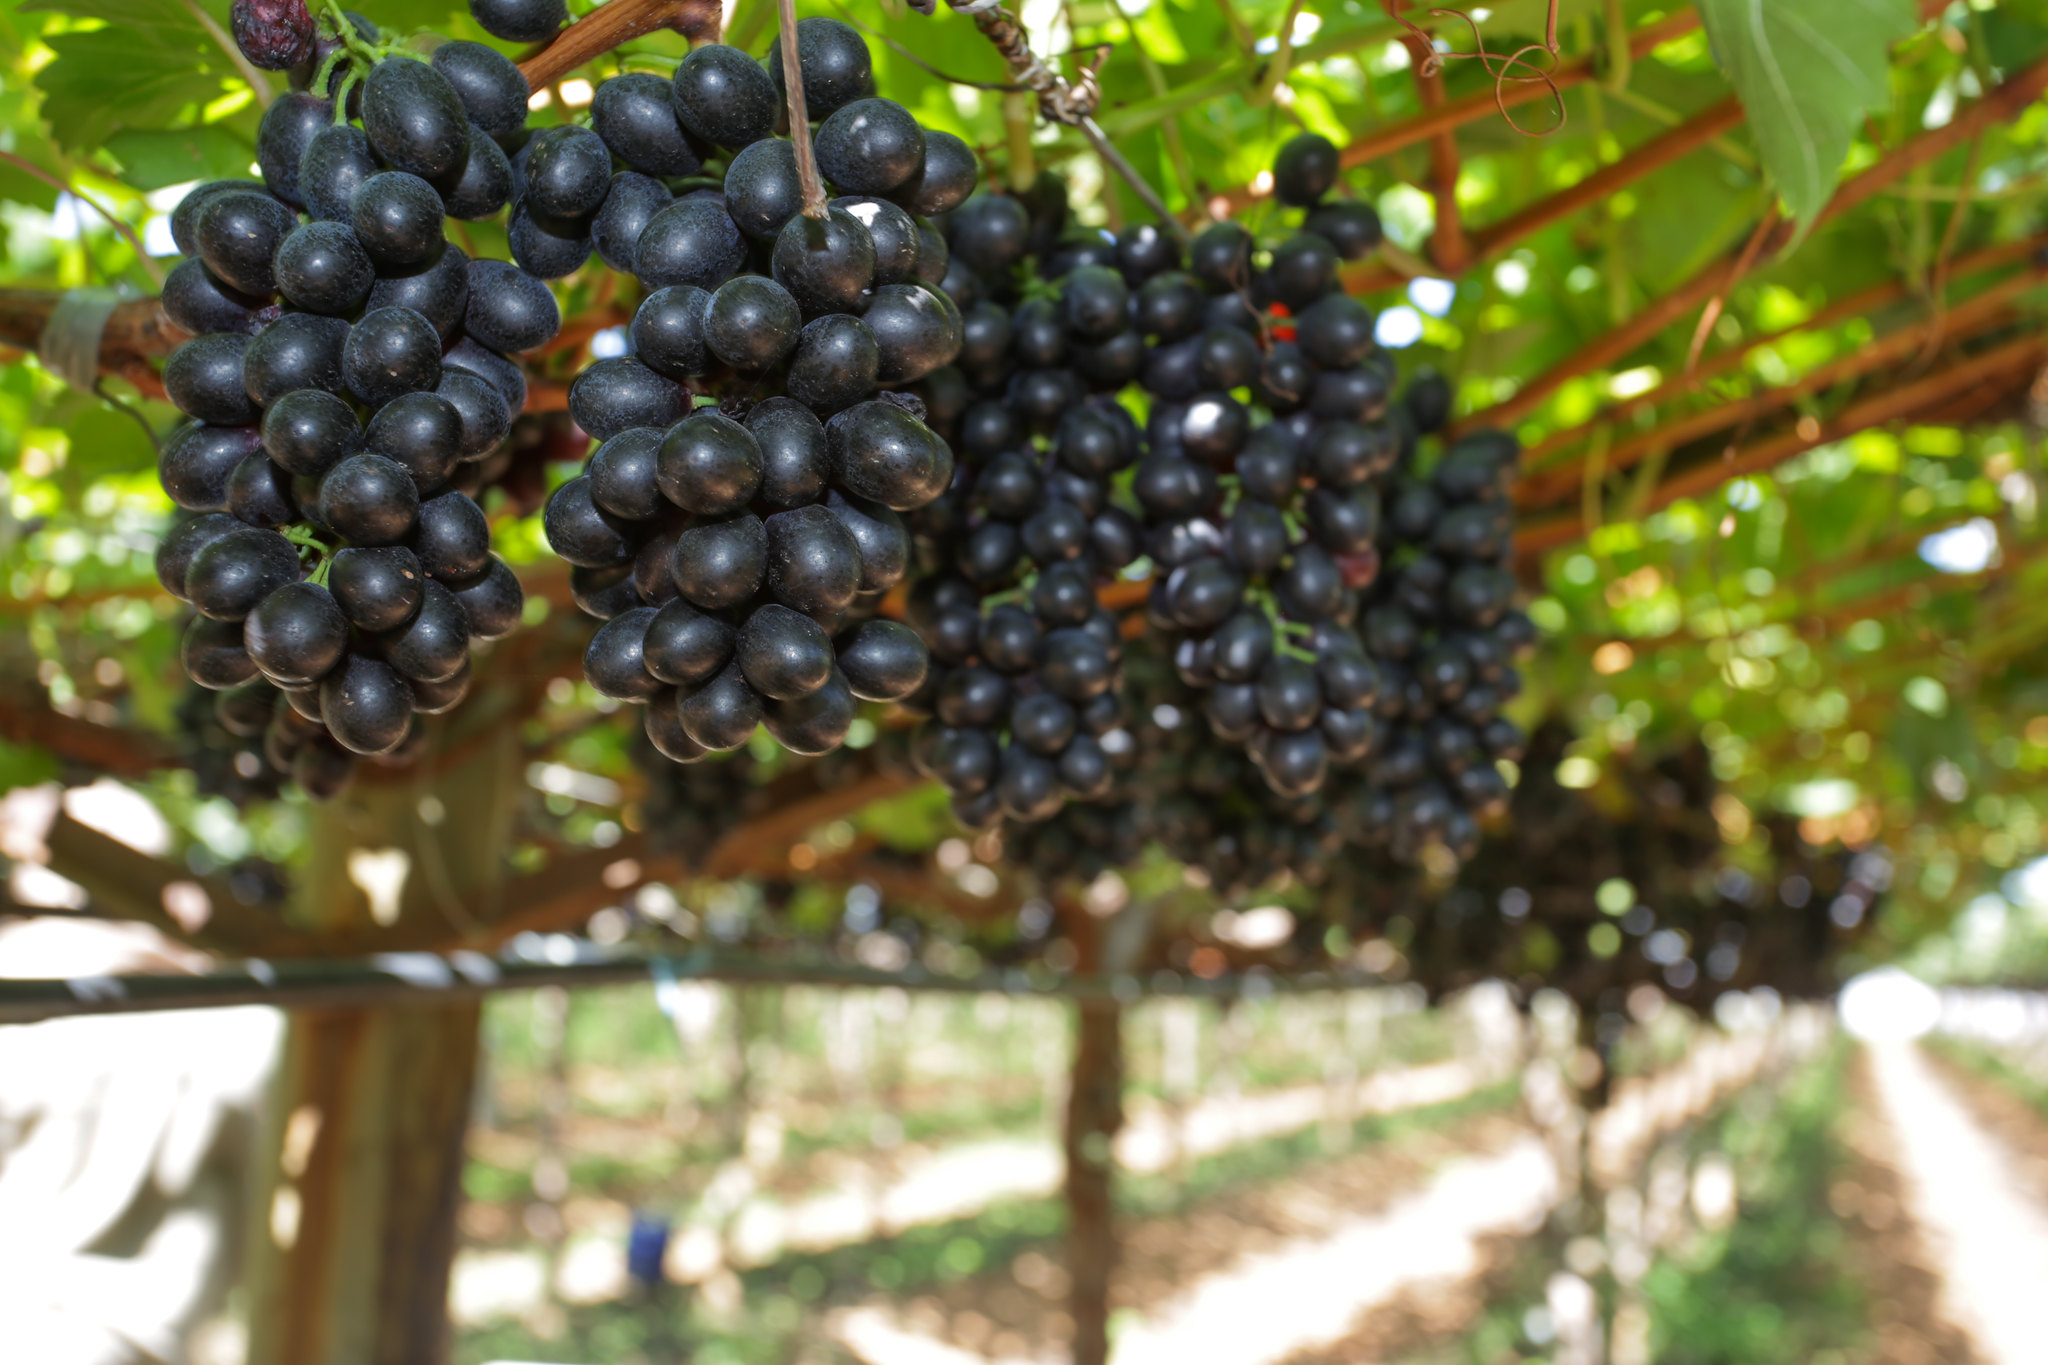 Uvas brancas estão sendo destinadas majoritariamente à exportação neste período do ano, e as negras sem semente apenas parcialmente; Foto: Tony Oliveira/CNA